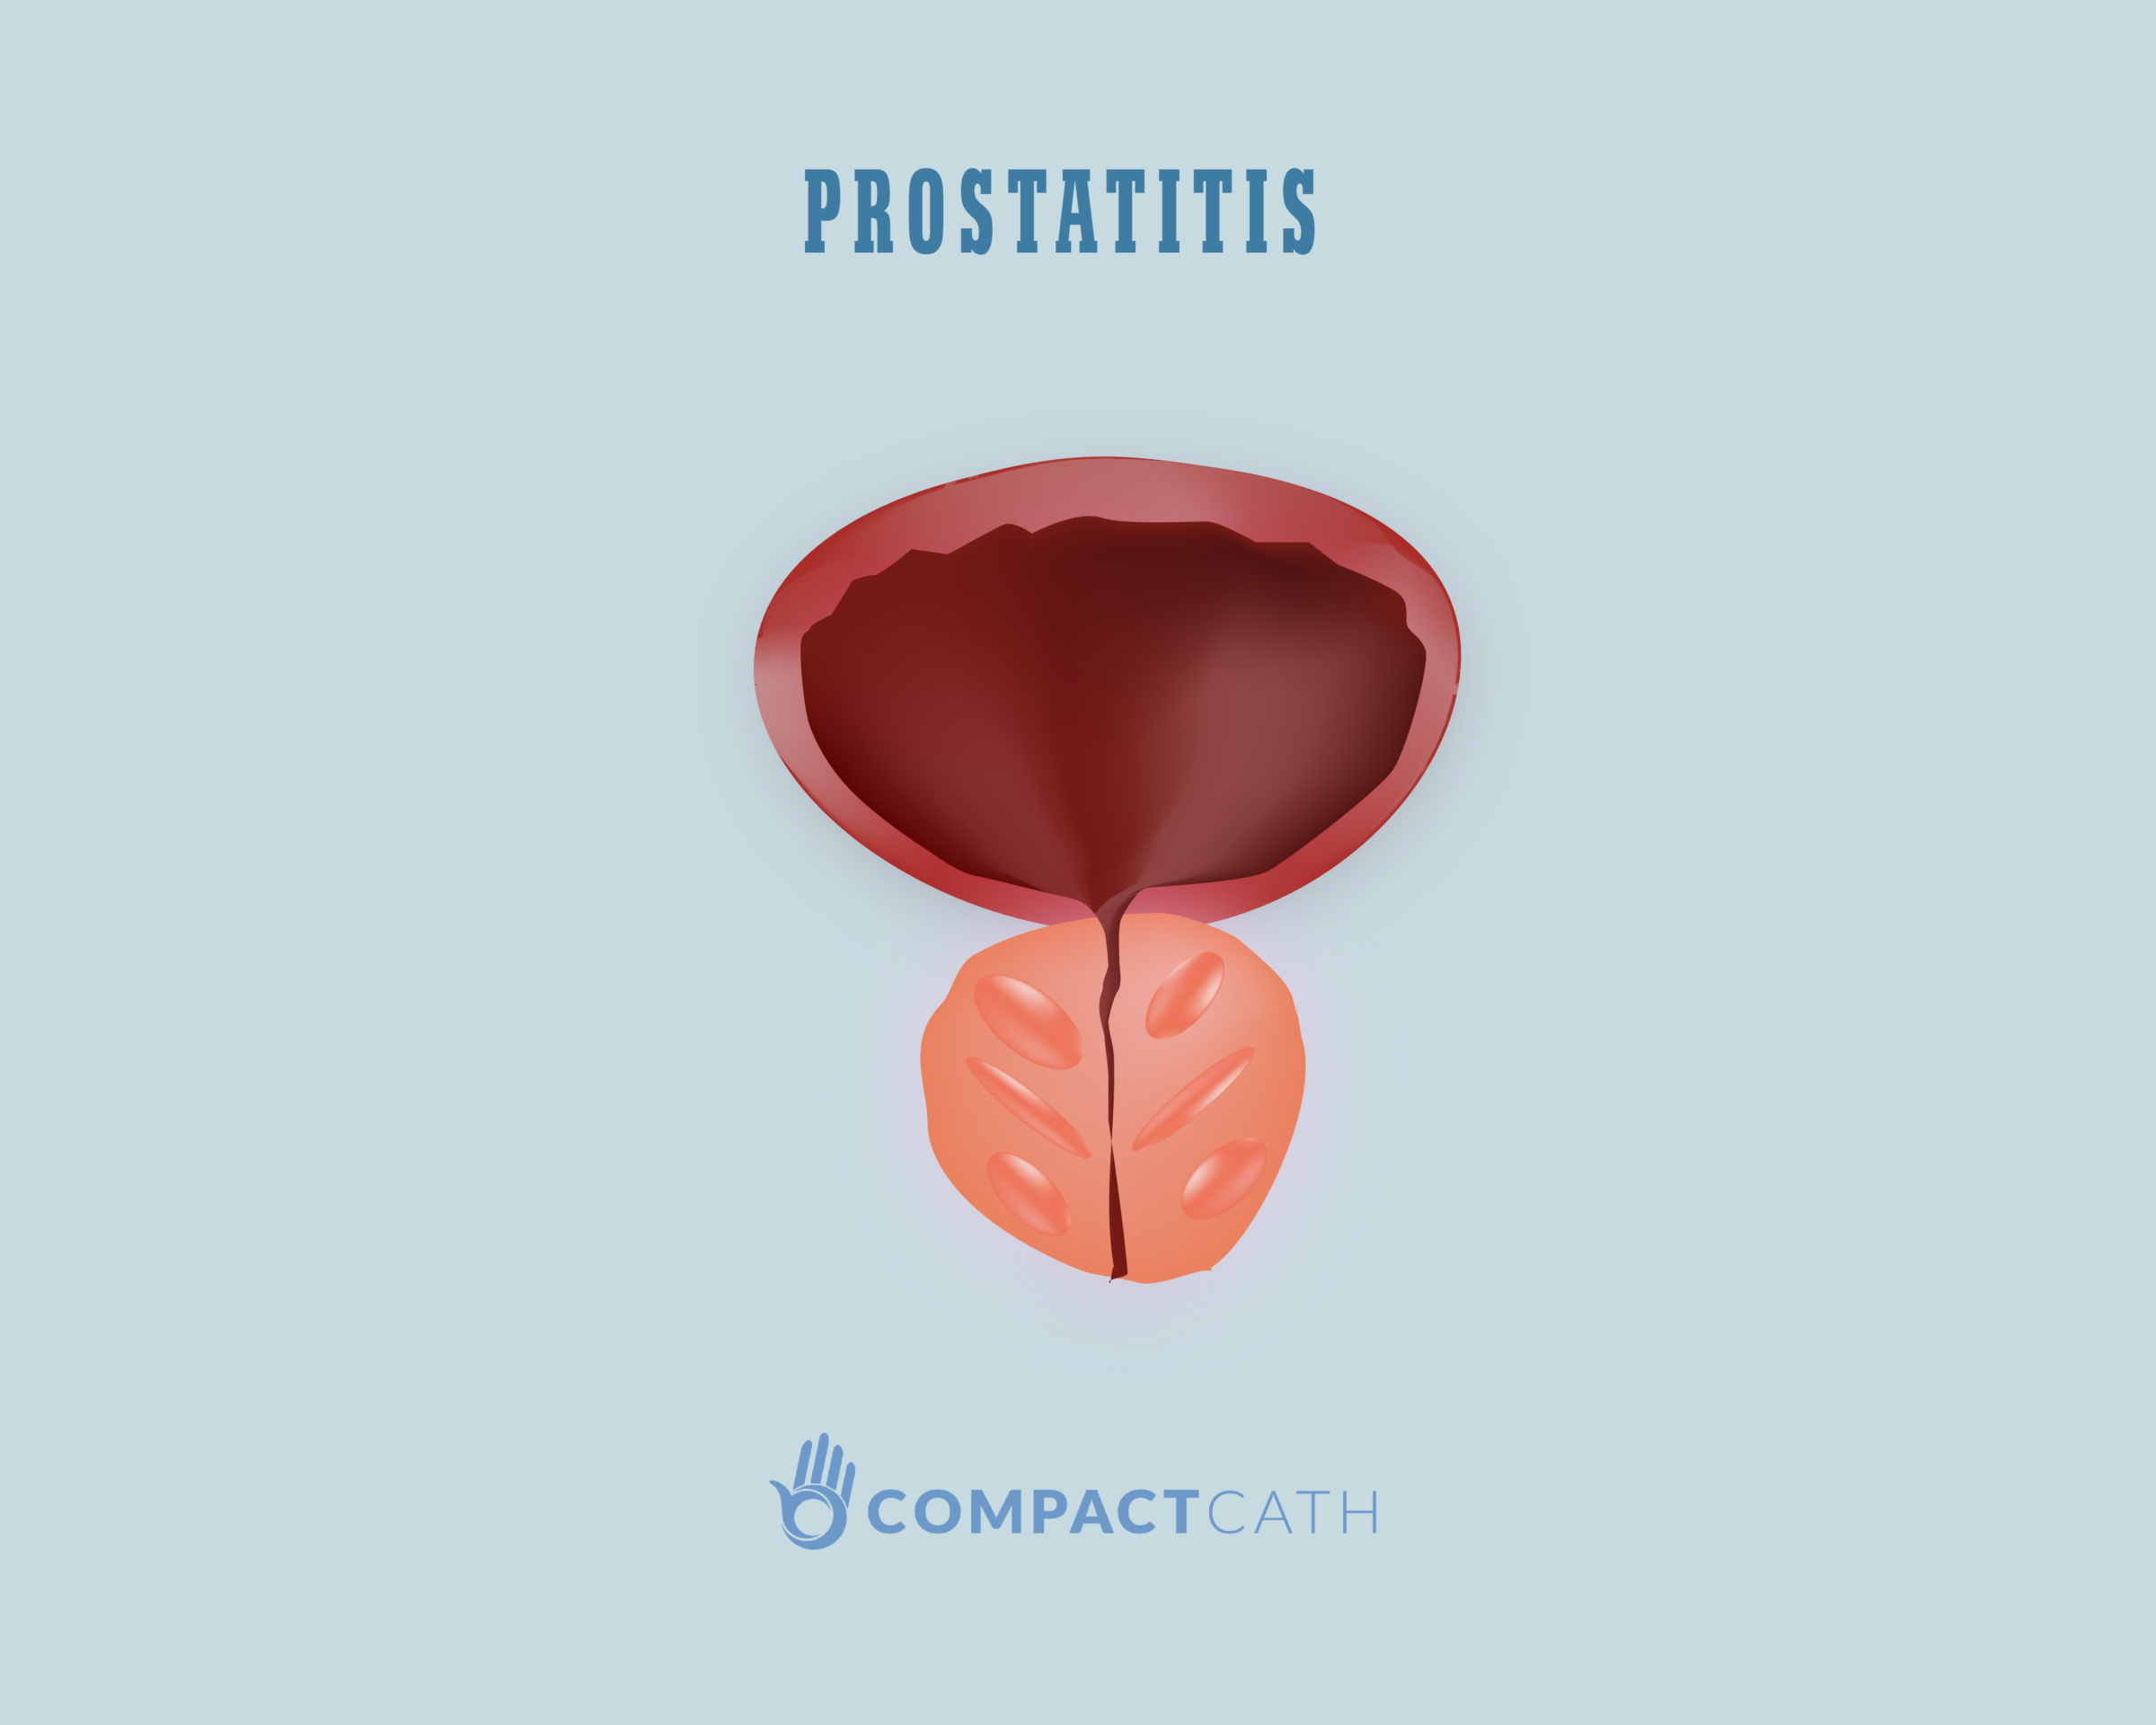 Prostatitis és vér a végbélben A prosztatitis gyakori súlyosbodása